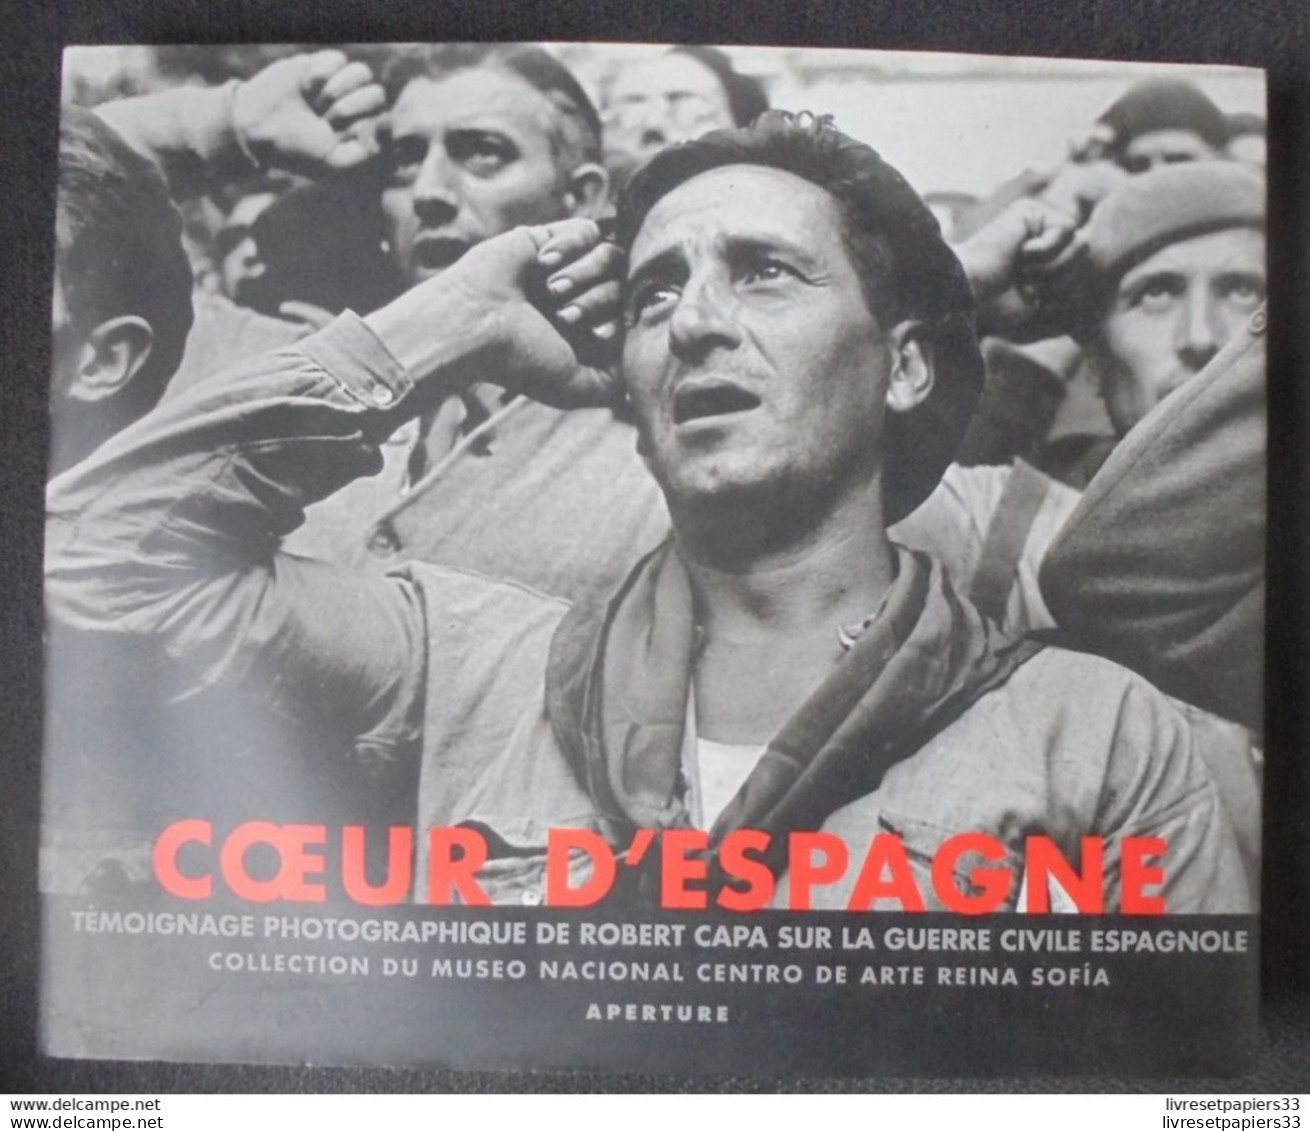 Coeur D'Espagne Témoignage Photographiques De Robert Capa Sur La Guerre Civile Espagnole - French